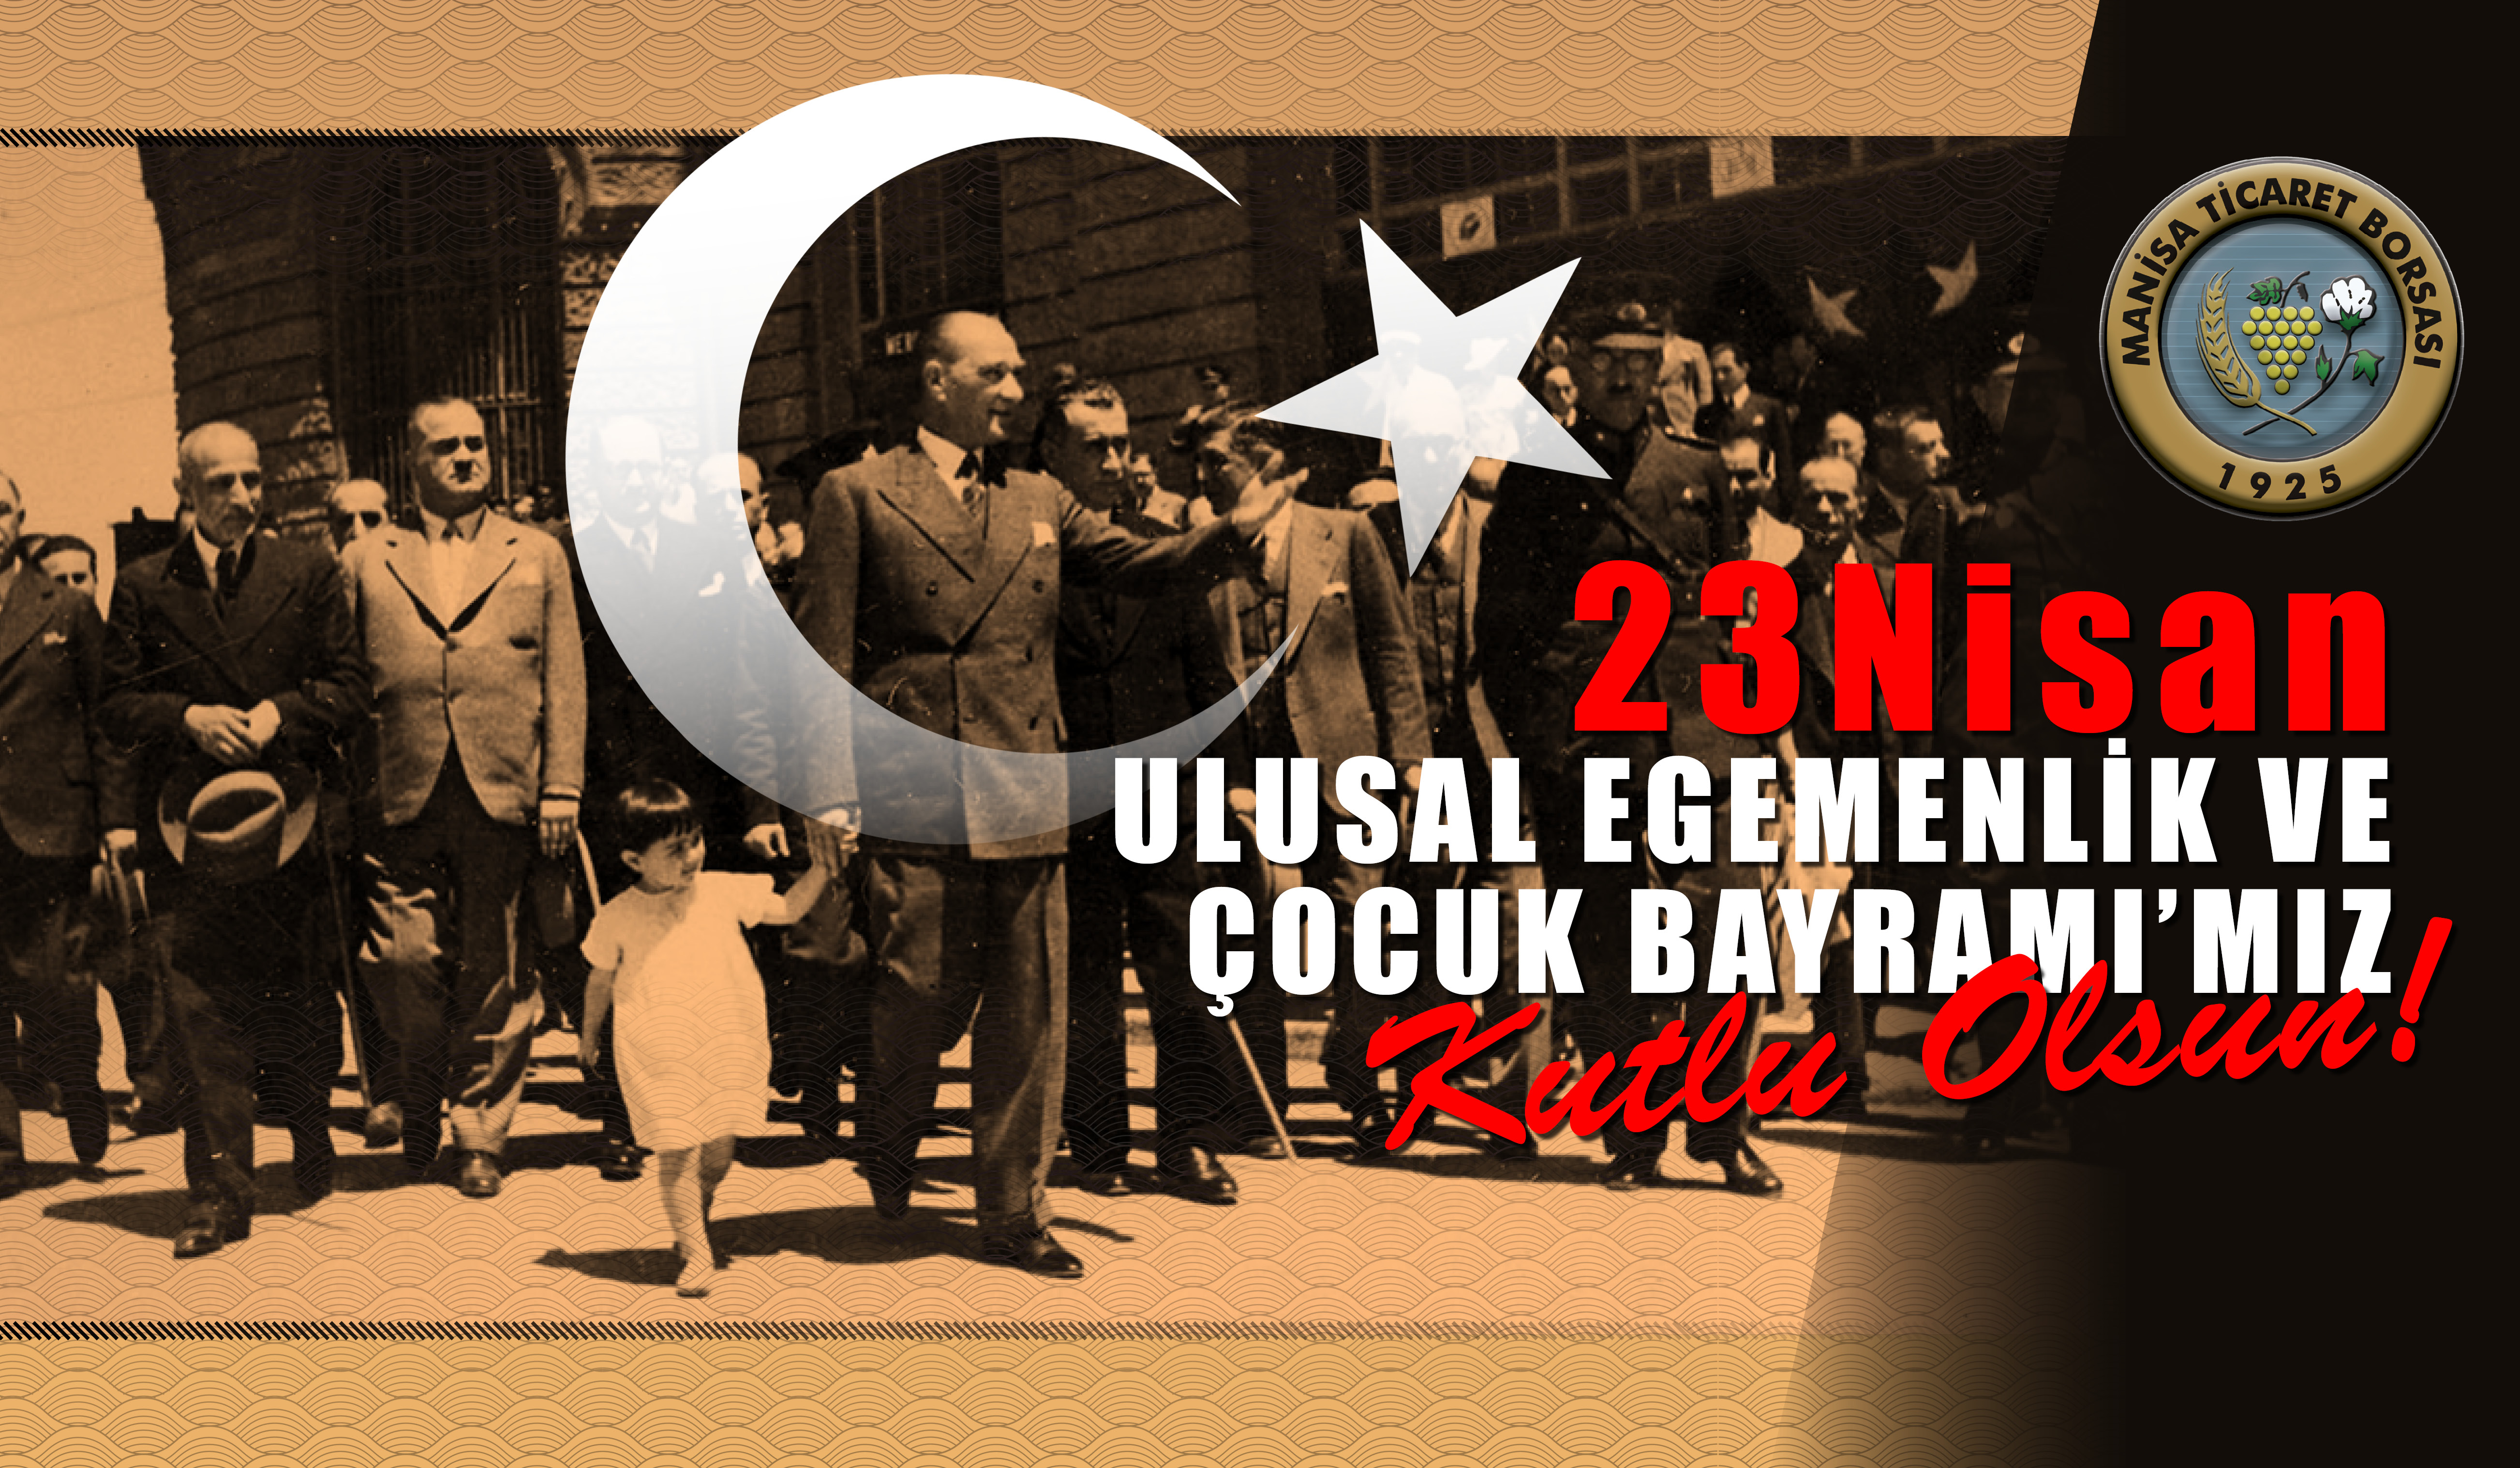 23 Nisan Ulusal Egemenlik ve ocuk Bayram'mz Kutlu Olsun!